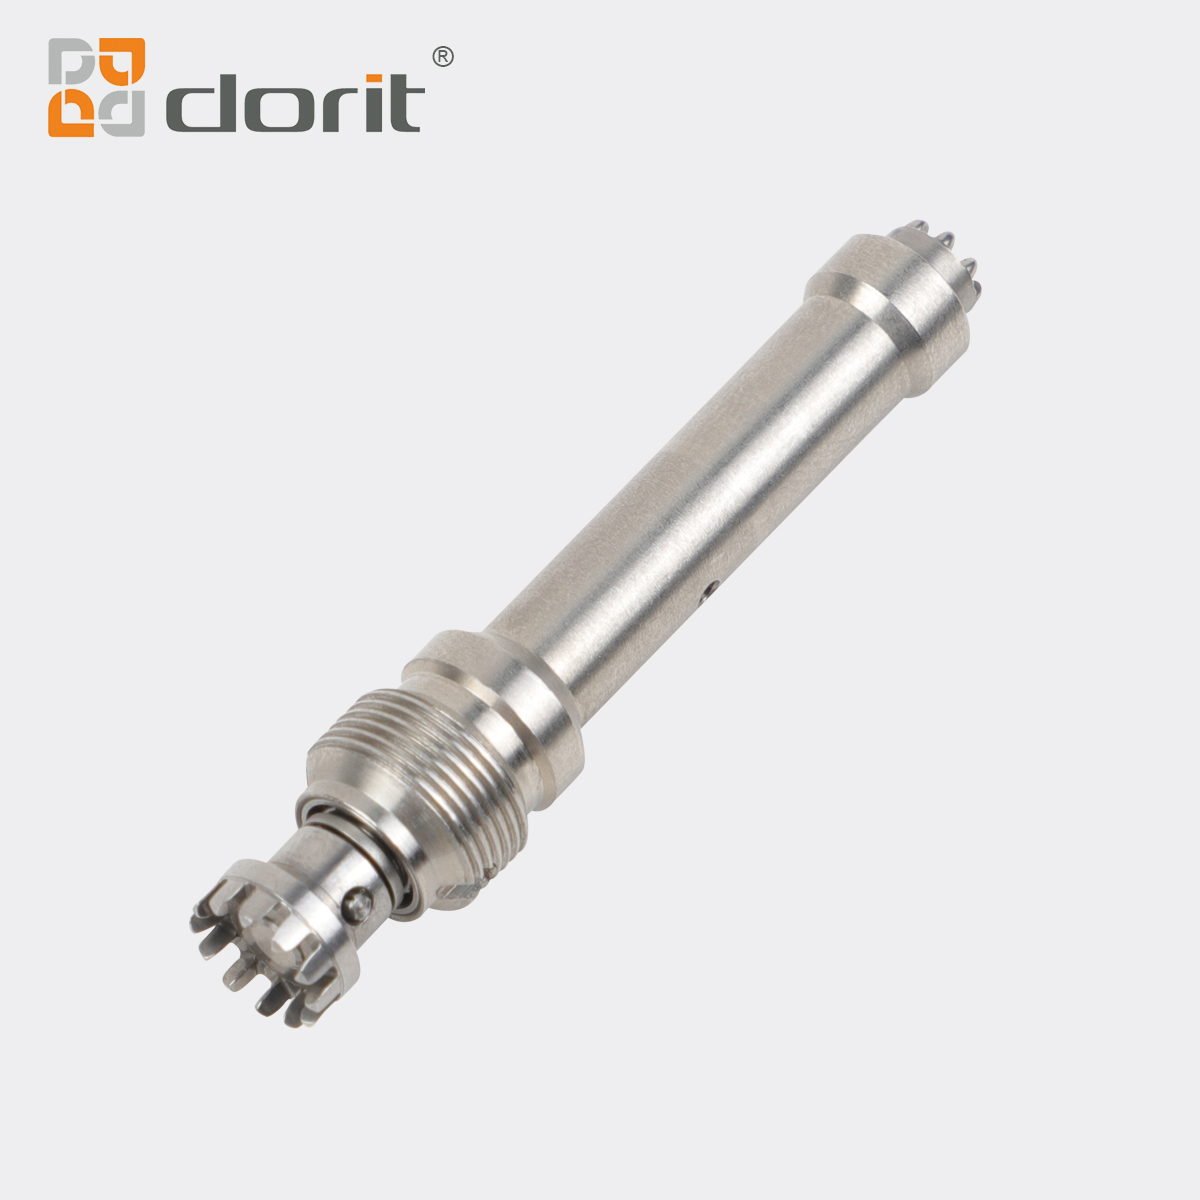 Dorit DR-201H 20:1 Dental Implant Surgical Handpiece 